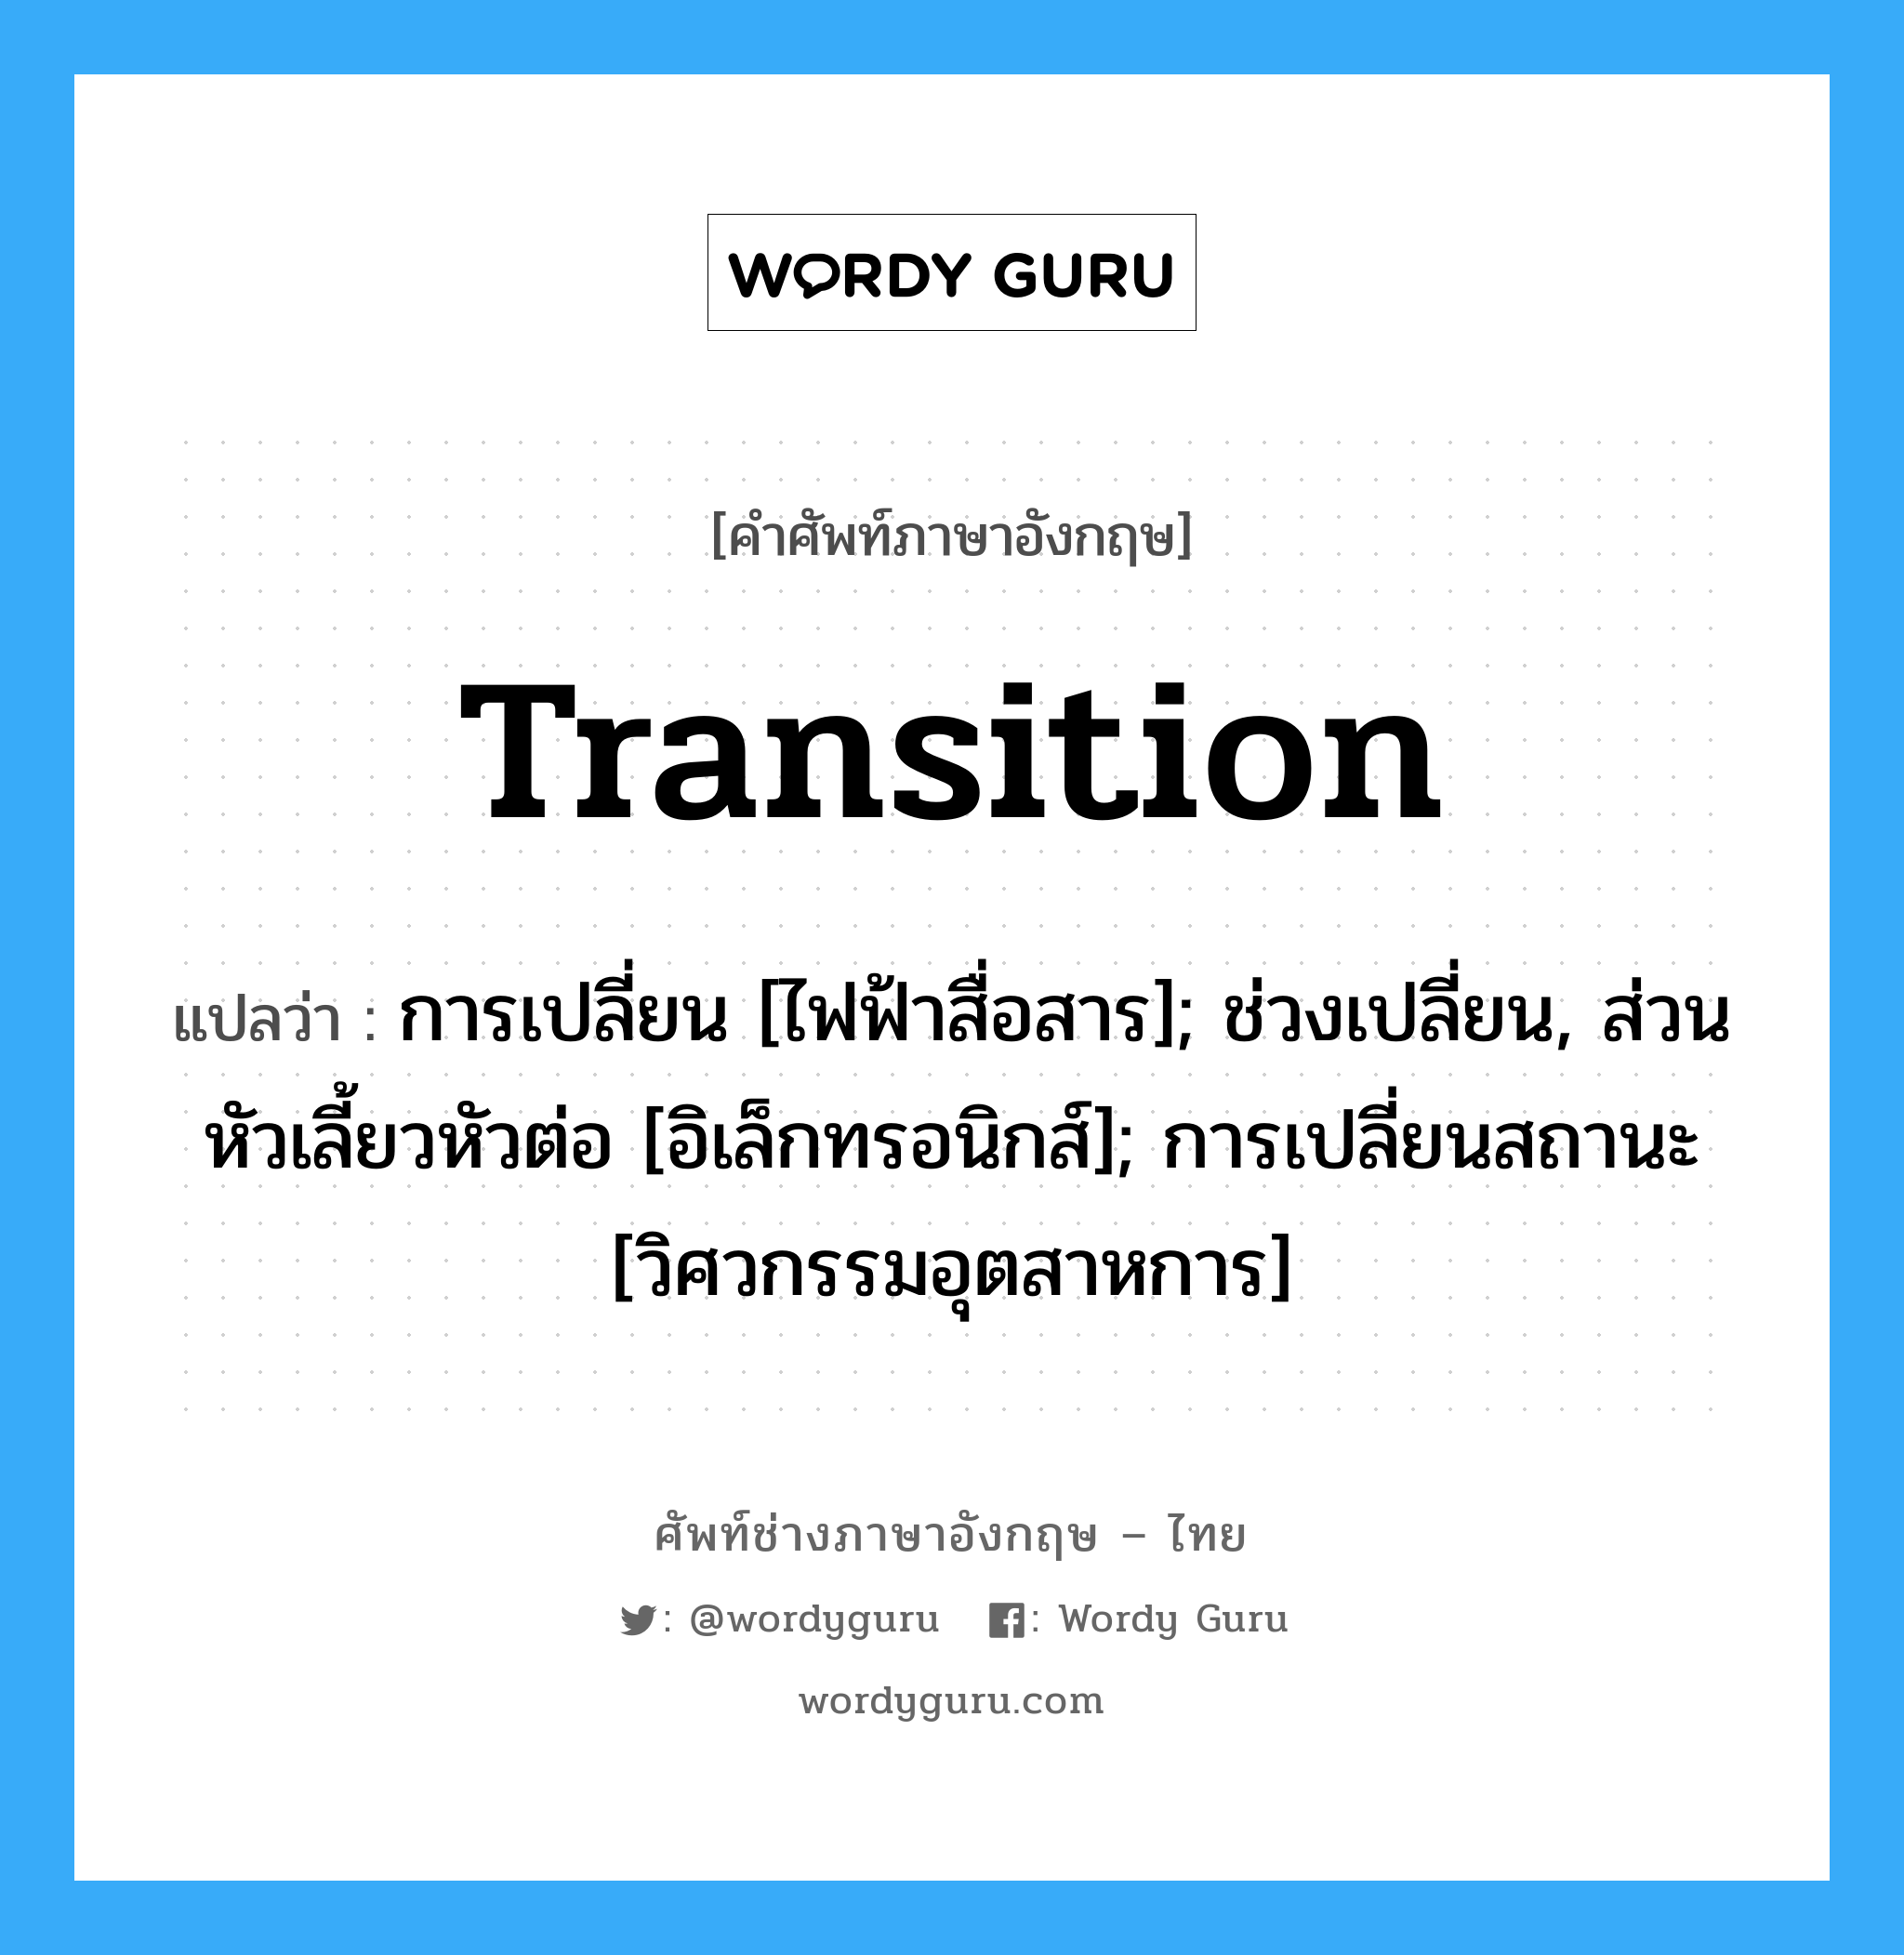 transition แปลว่า?, คำศัพท์ช่างภาษาอังกฤษ - ไทย transition คำศัพท์ภาษาอังกฤษ transition แปลว่า การเปลี่ยน [ไฟฟ้าสื่อสาร]; ช่วงเปลี่ยน, ส่วนหัวเลี้ยวหัวต่อ [อิเล็กทรอนิกส์]; การเปลี่ยนสถานะ [วิศวกรรมอุตสาหการ]